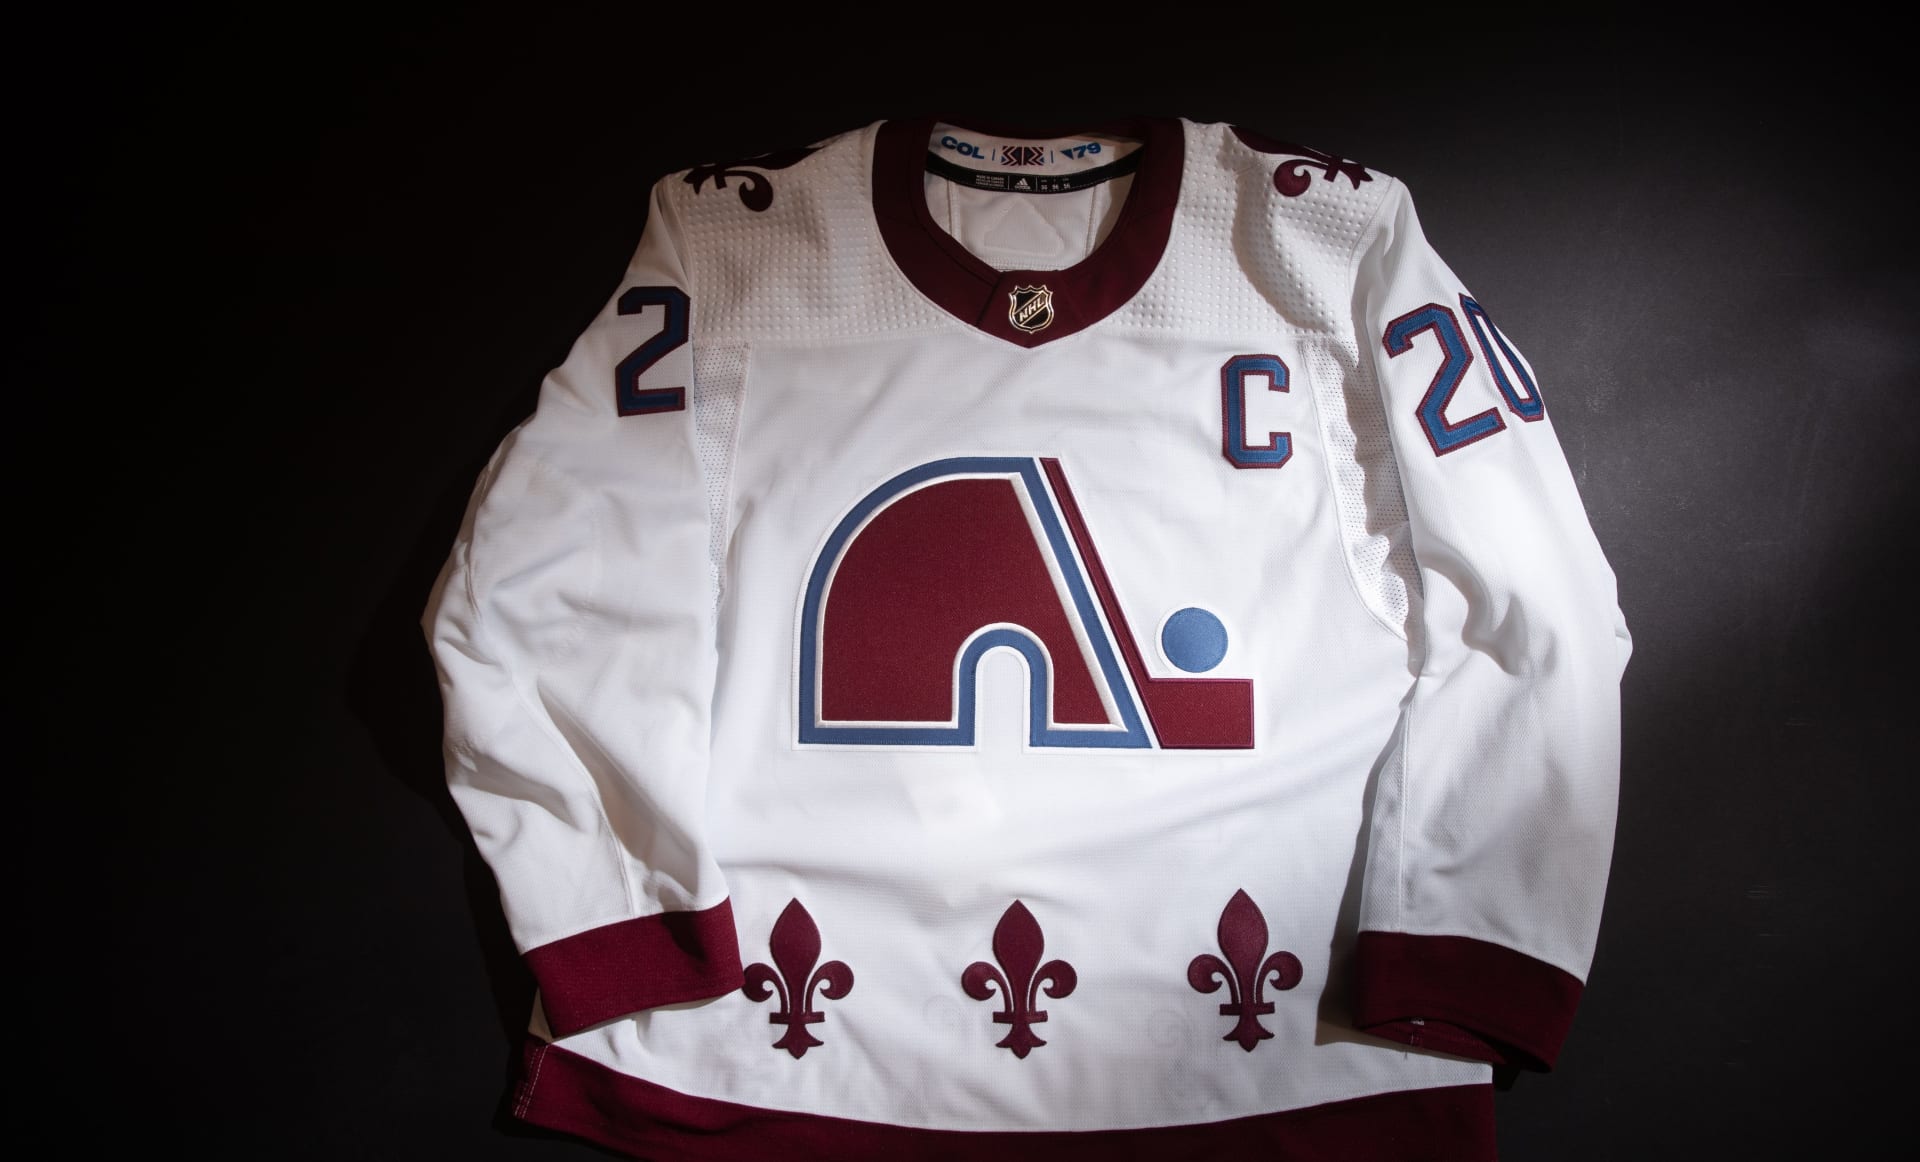 COLORADO AVALANCHE | Místo Colorada Avalanche hrál NHL dříve Québec Nordiques. Speciální dres pro sezonu 2020–2021 kombinuje logo kanadského celku z roku 1979 a současné barvy amerického týmu. 